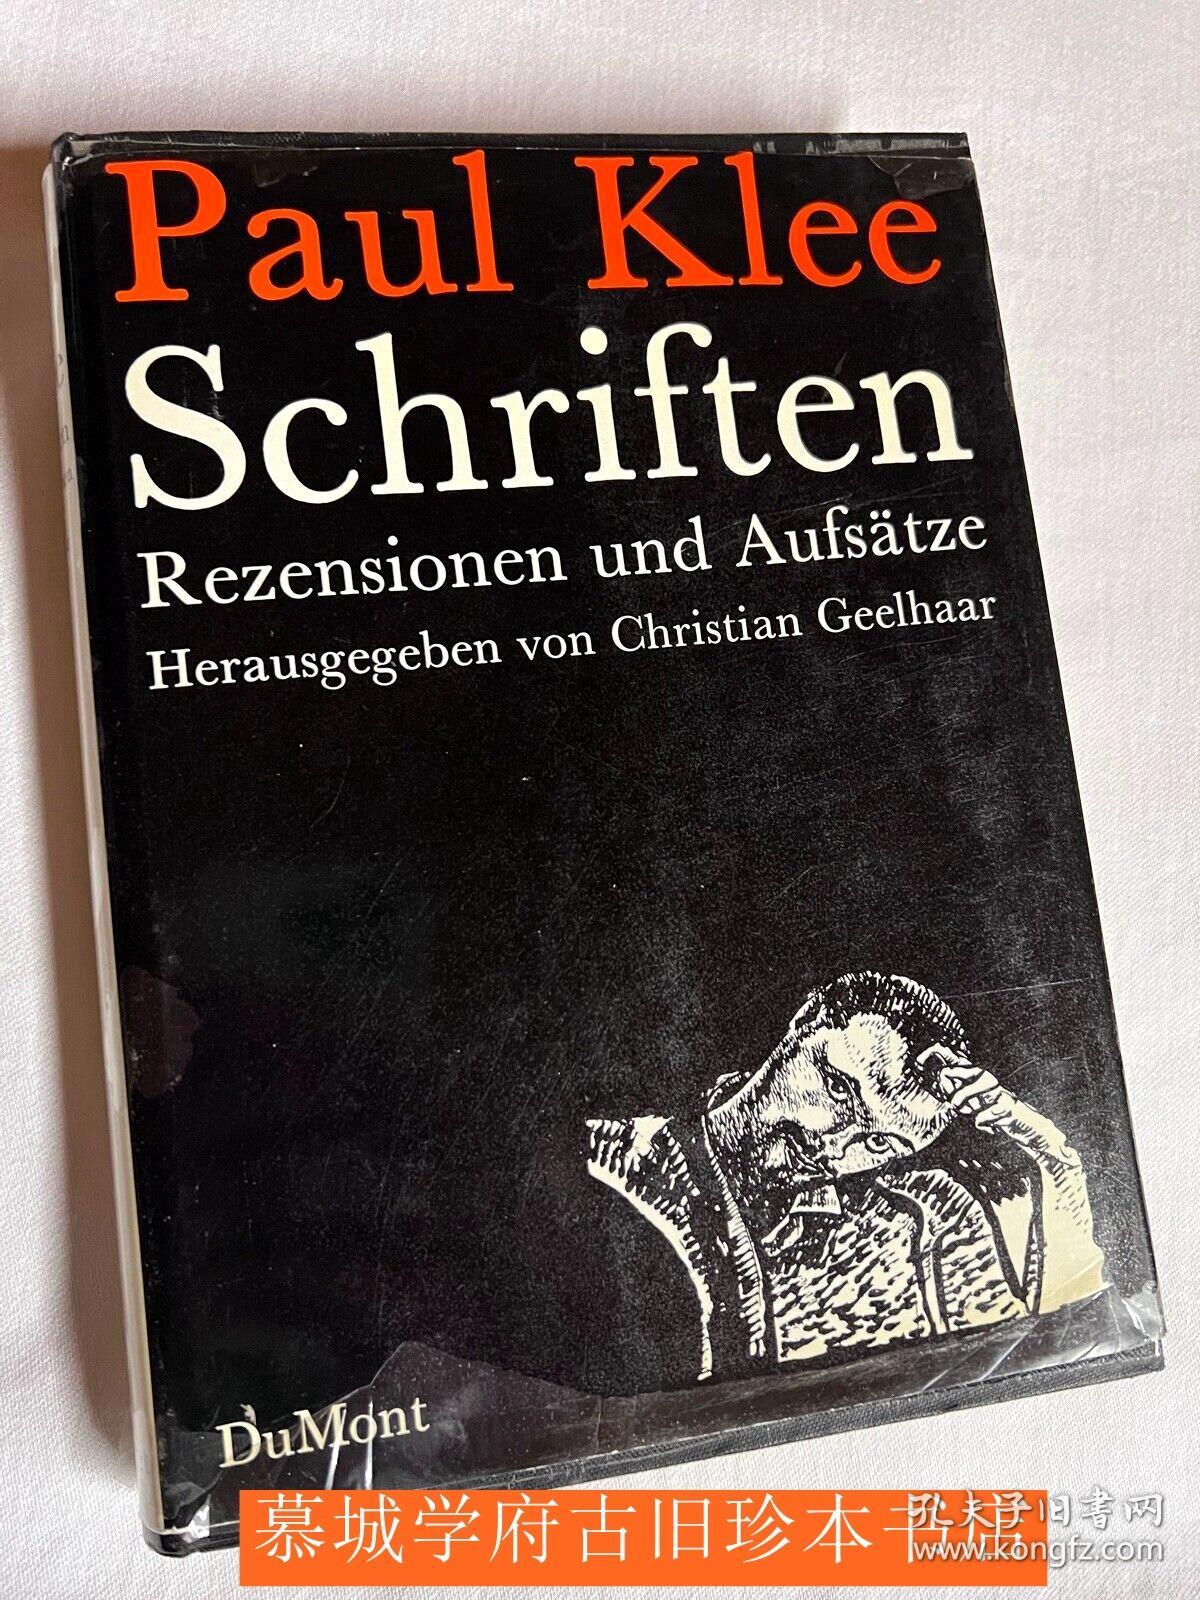 Paul Klee: Schriften - Rezensionen und Aufsätze